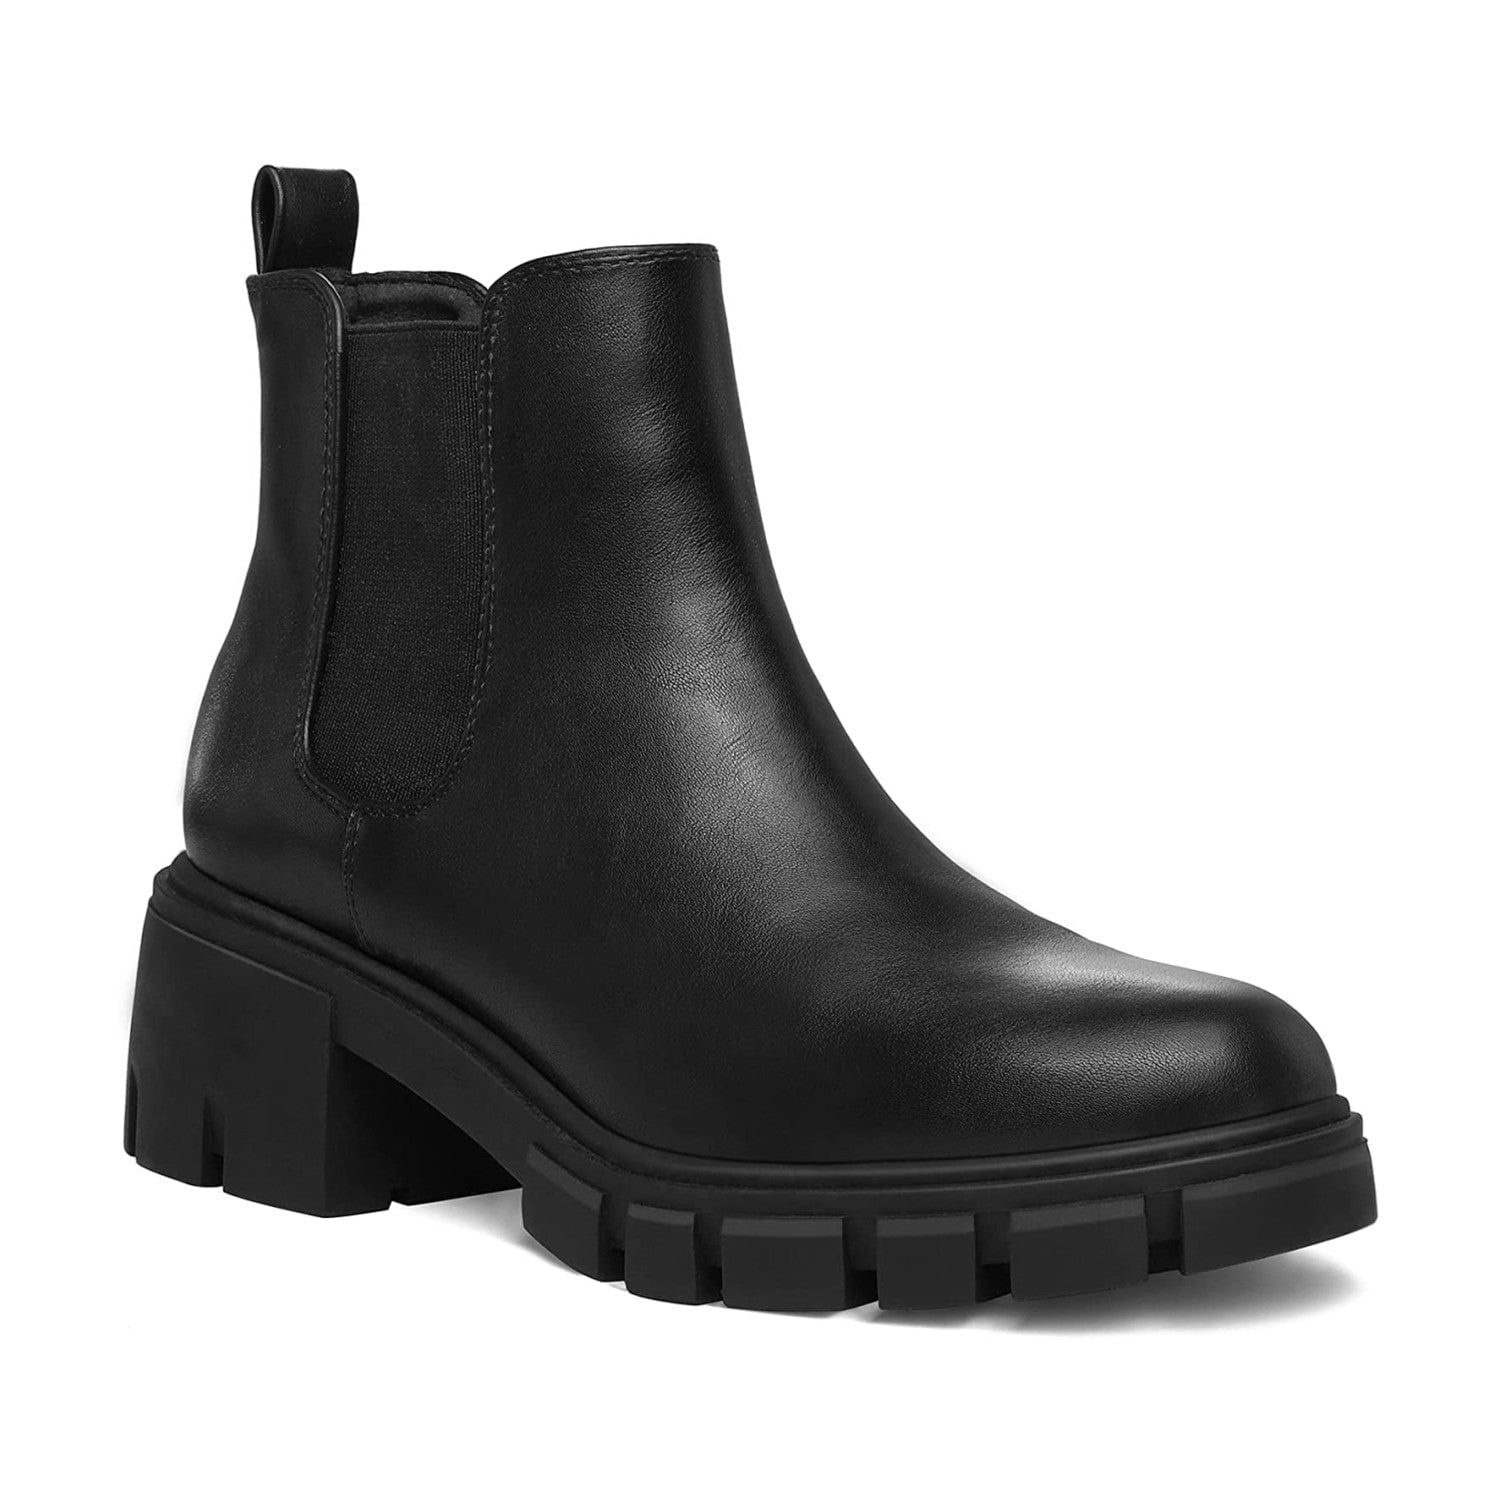 Mysoft Women's Black Platform Chelsea Boots Ankle Boots Size 9.5 ...